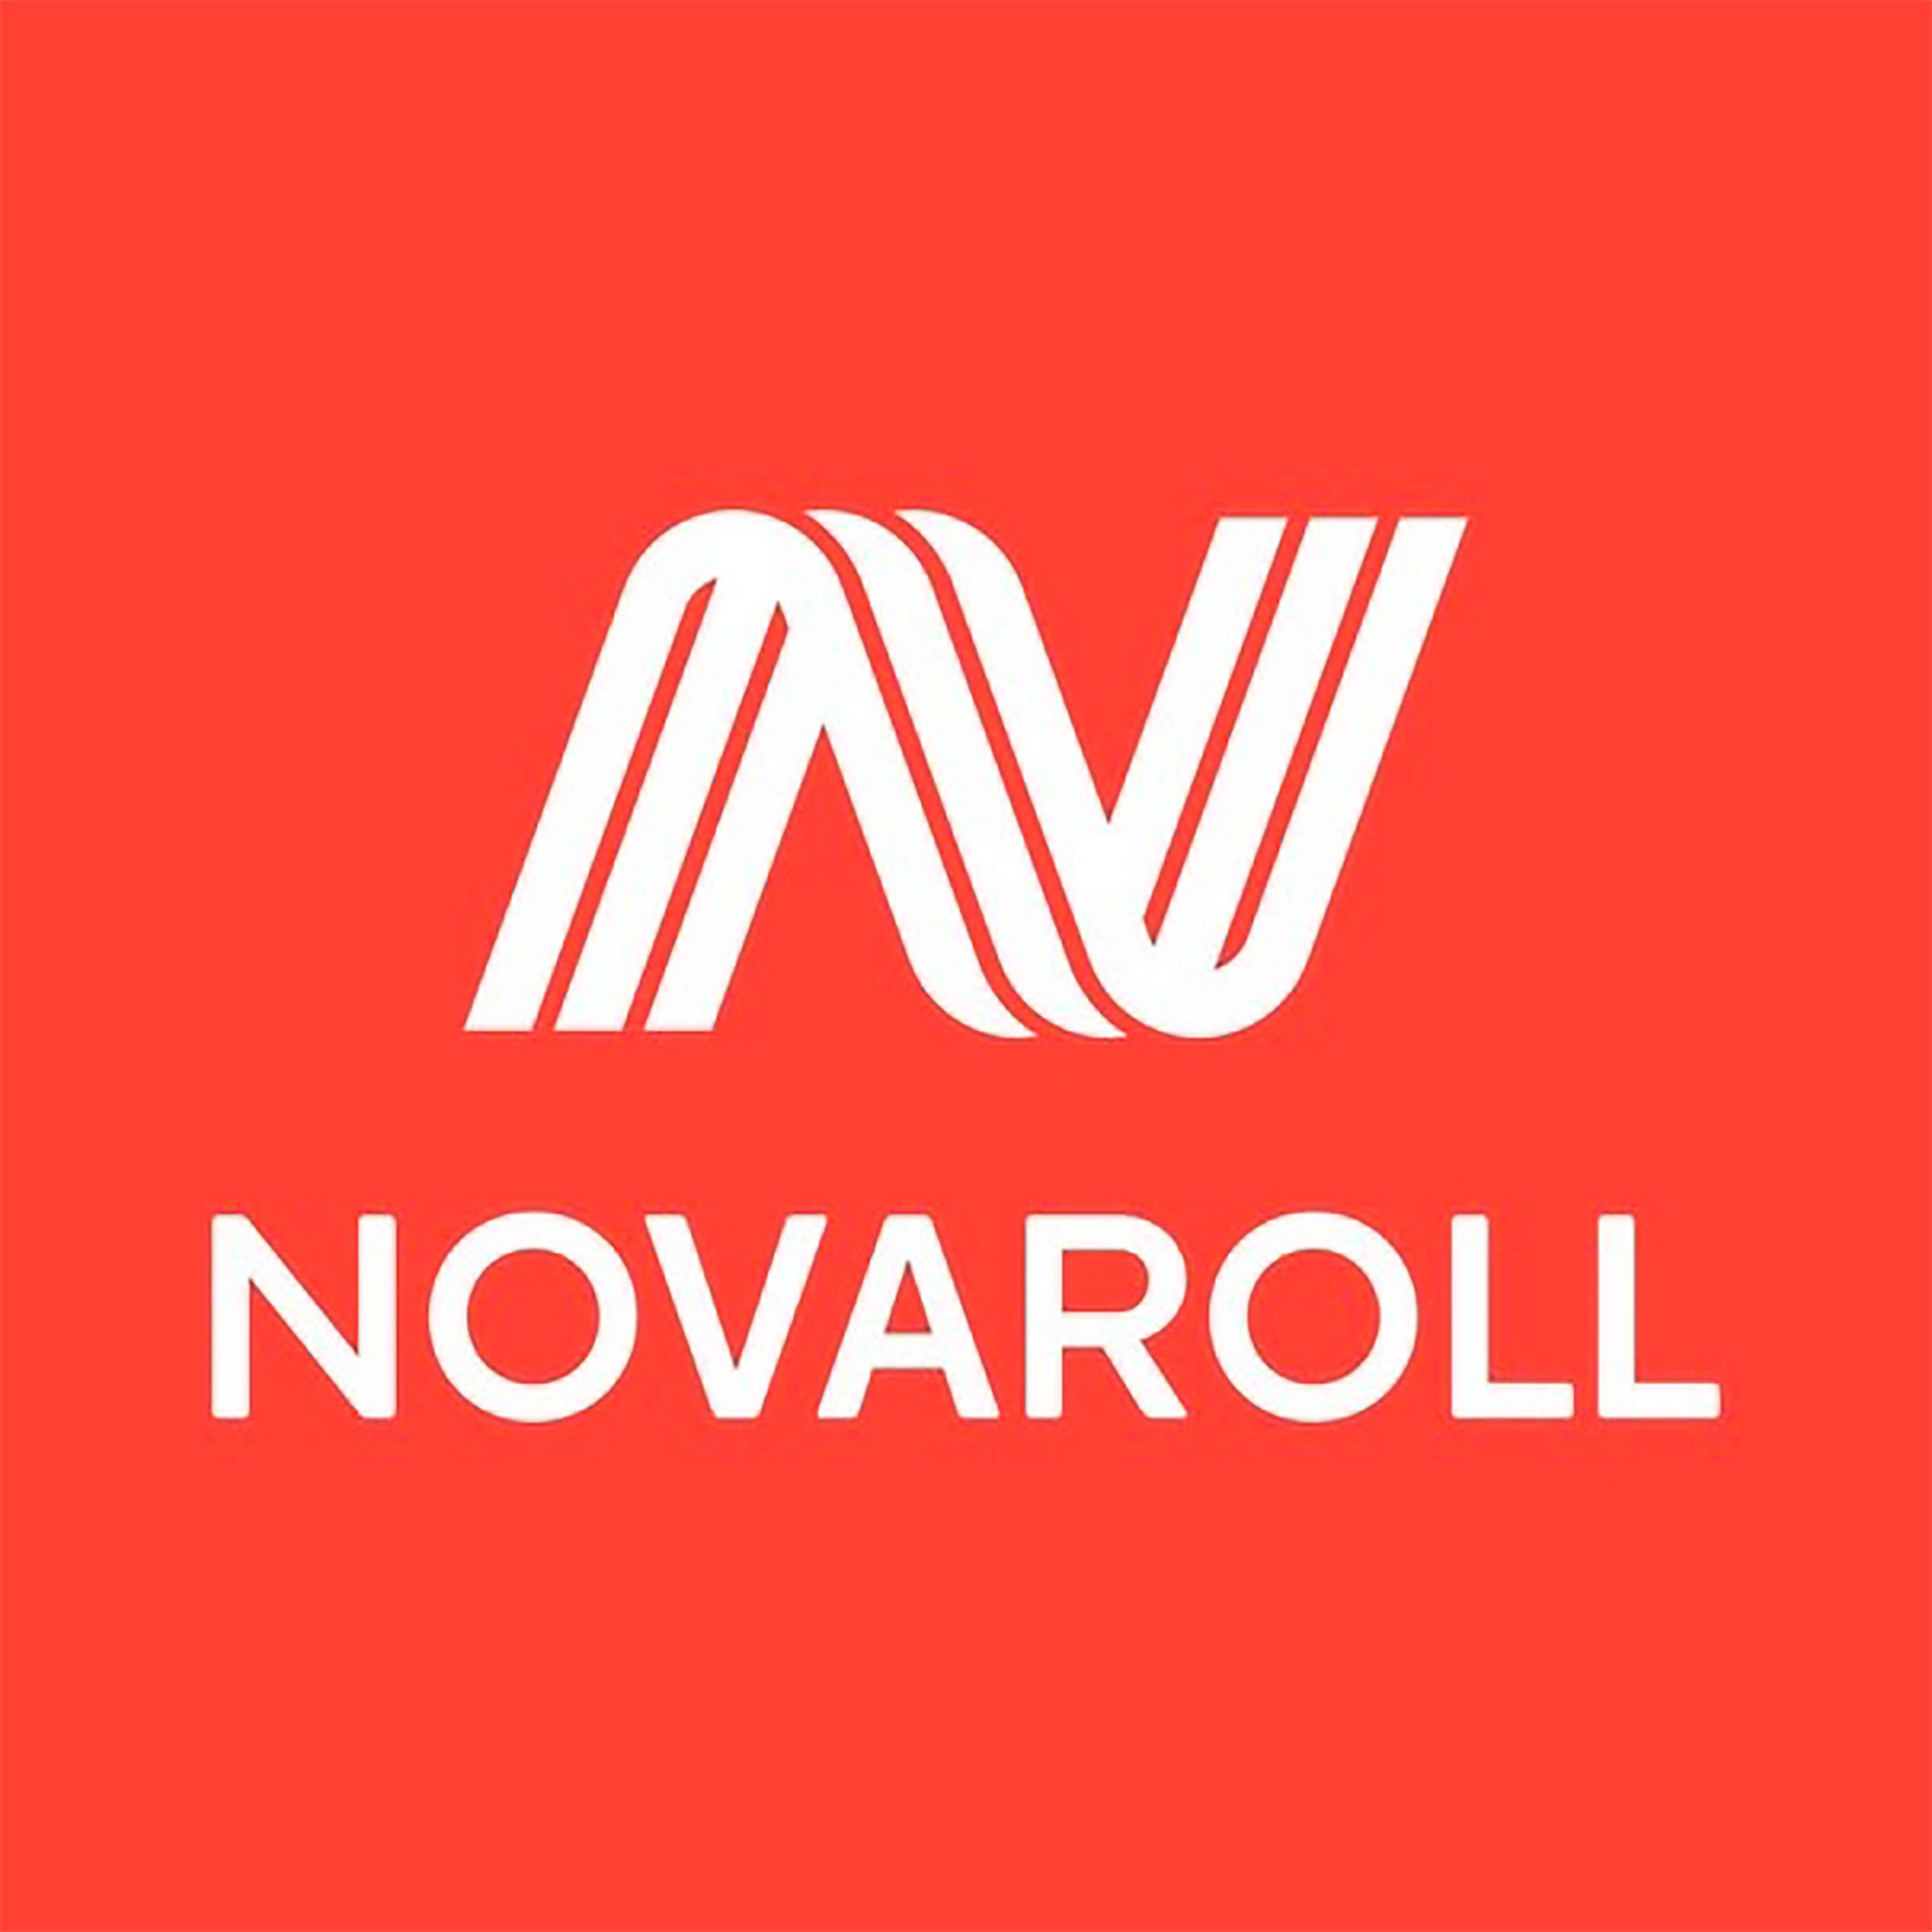 Нова ролл стрейч. Логотип. Nova Roll логотип. NOVAROLL компания. Новоролл стрейч Камские Поляны.